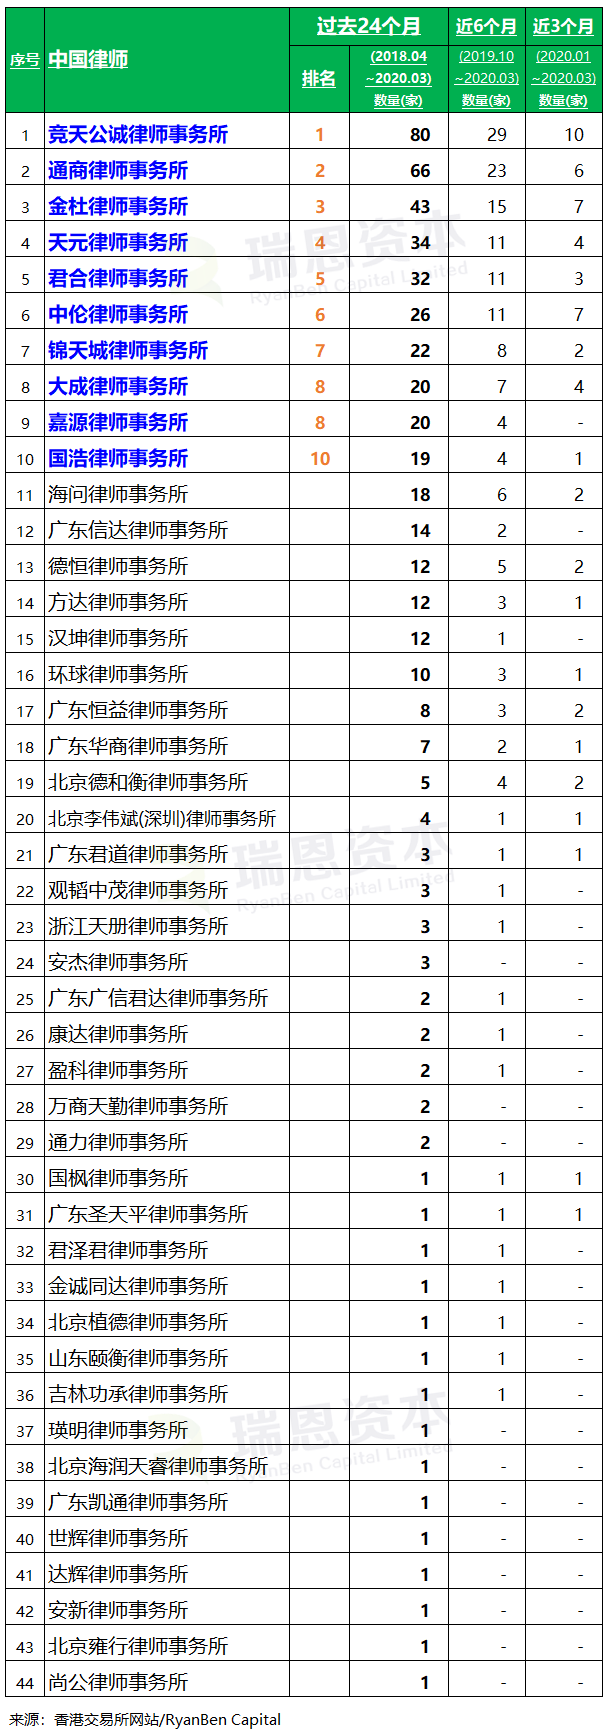 香港 IPO中介机构排行榜 (过去24个月：2018年4月-2020年3月)